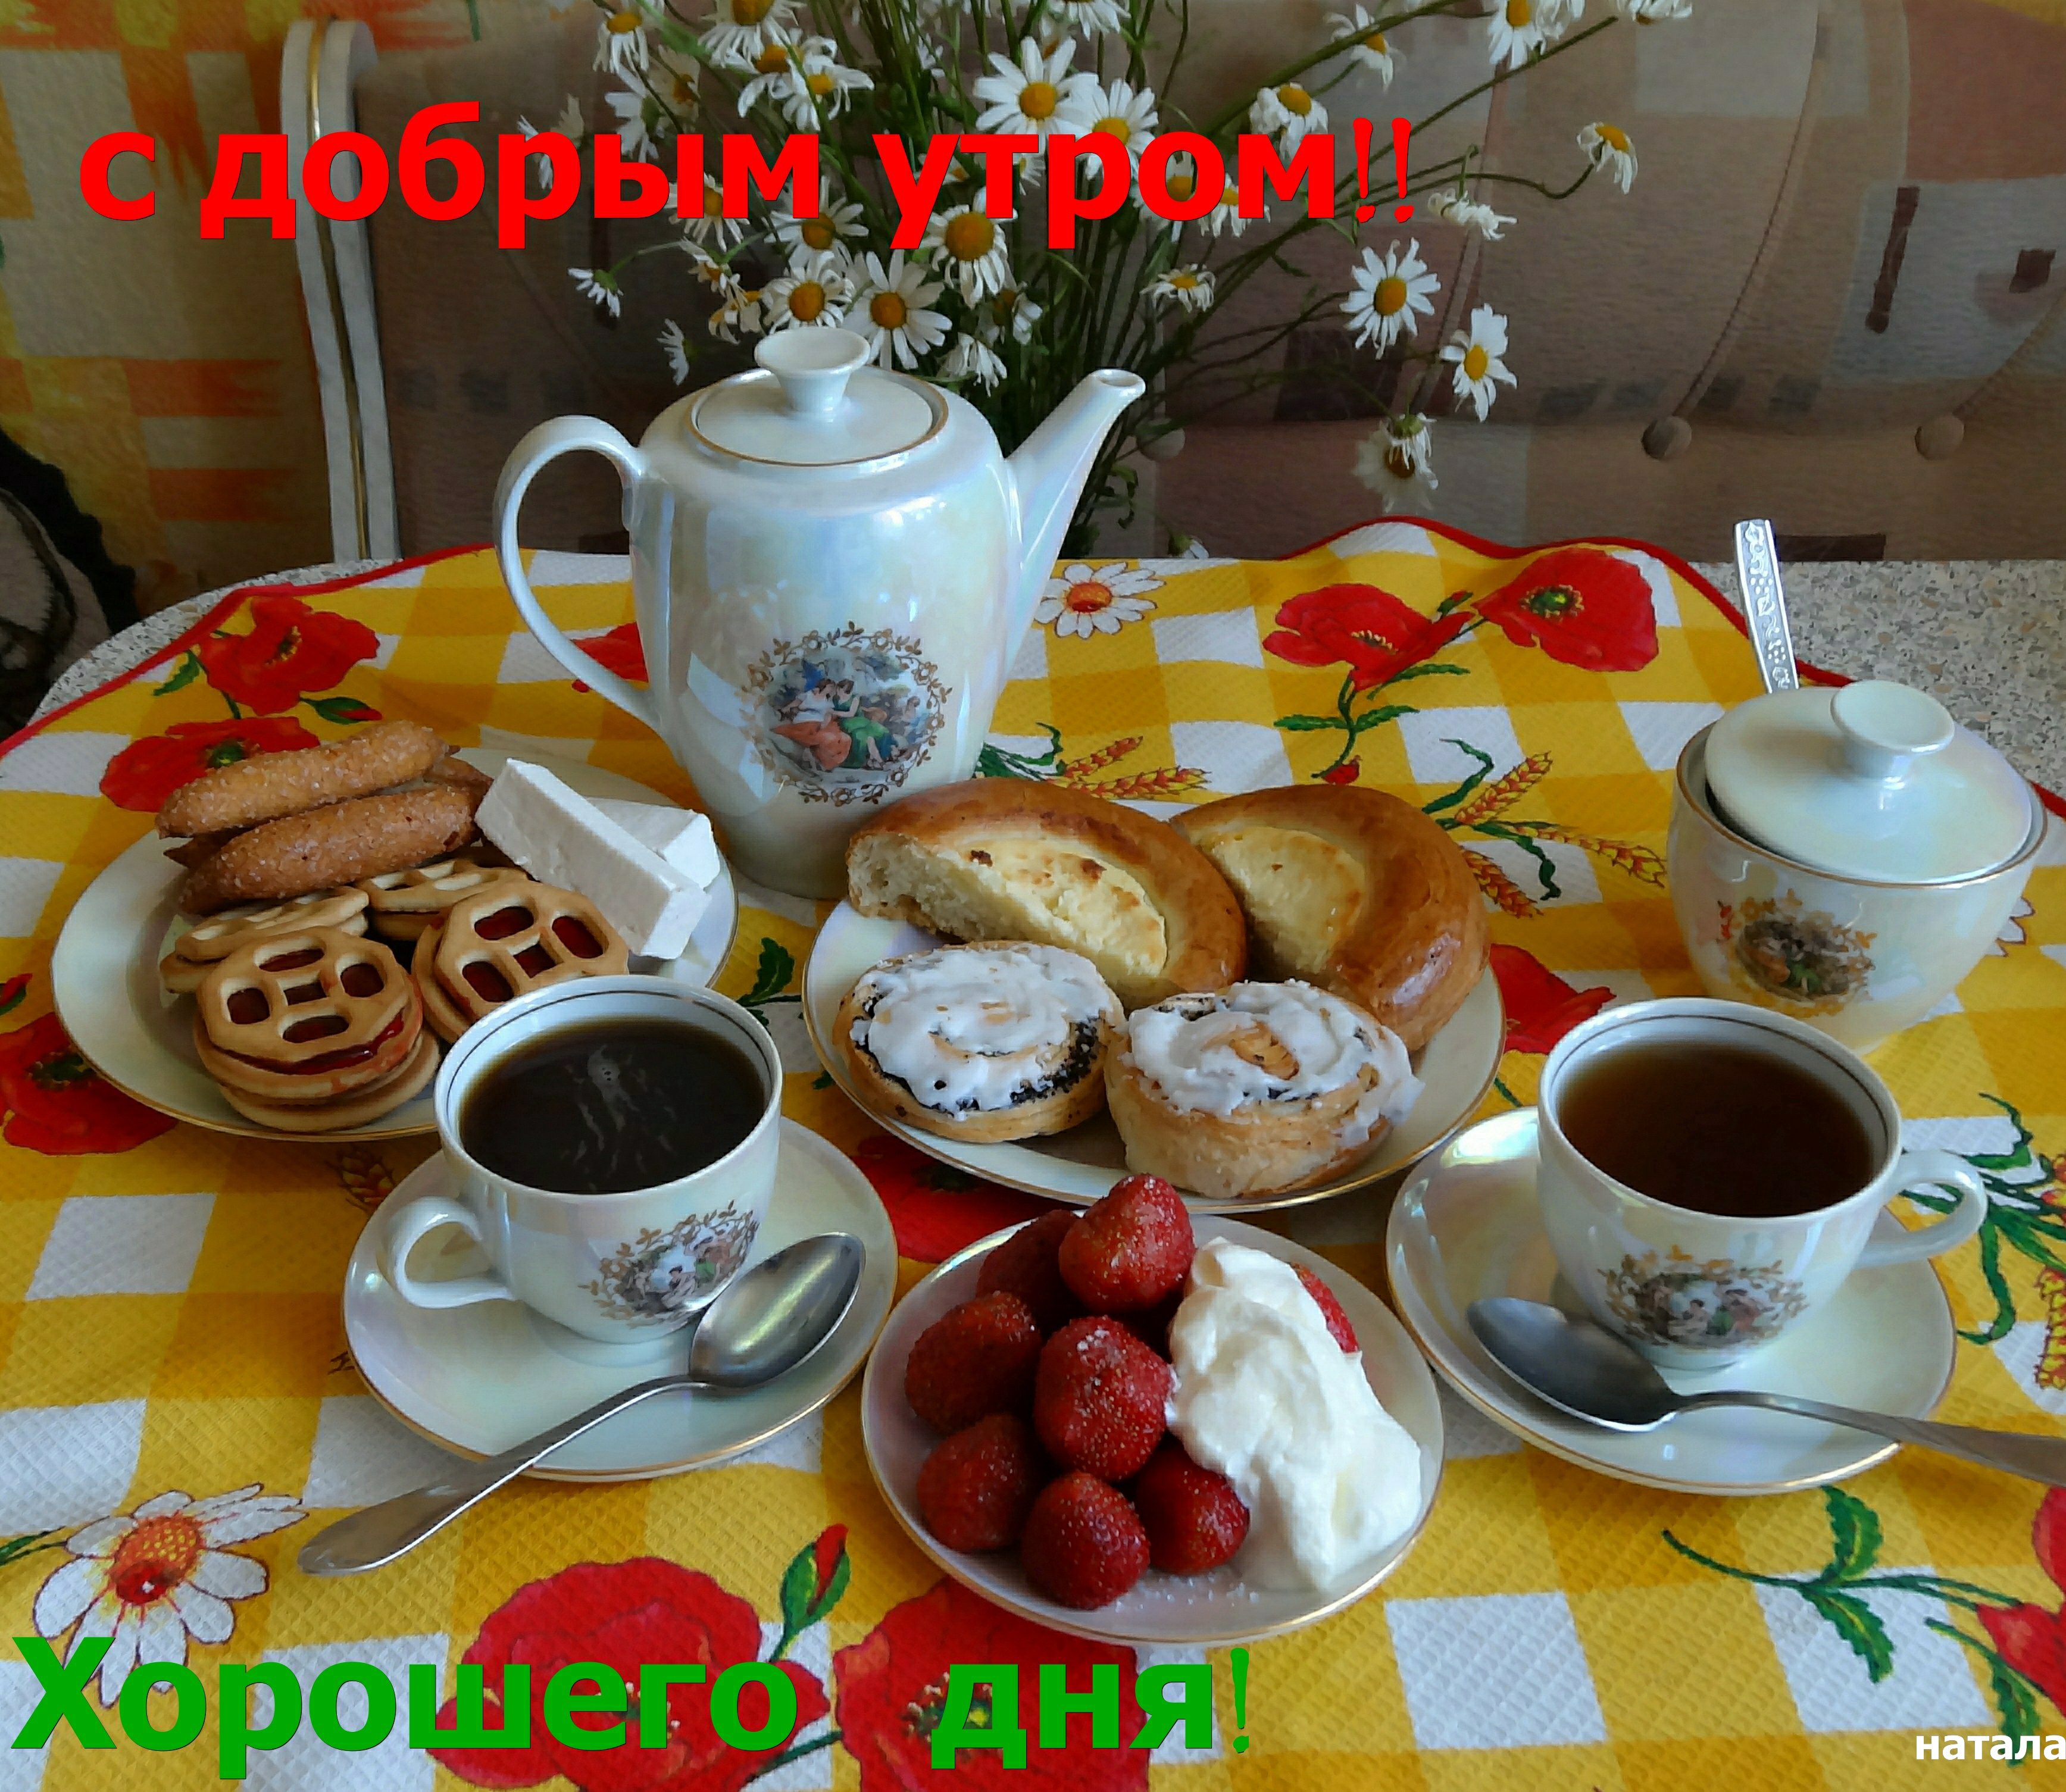 Приходите на завтрак. Чаепитие утром. Вкусного доброго утра. Вкусного завтрака и хорошего дня. Доброе утро приятного чаепития.